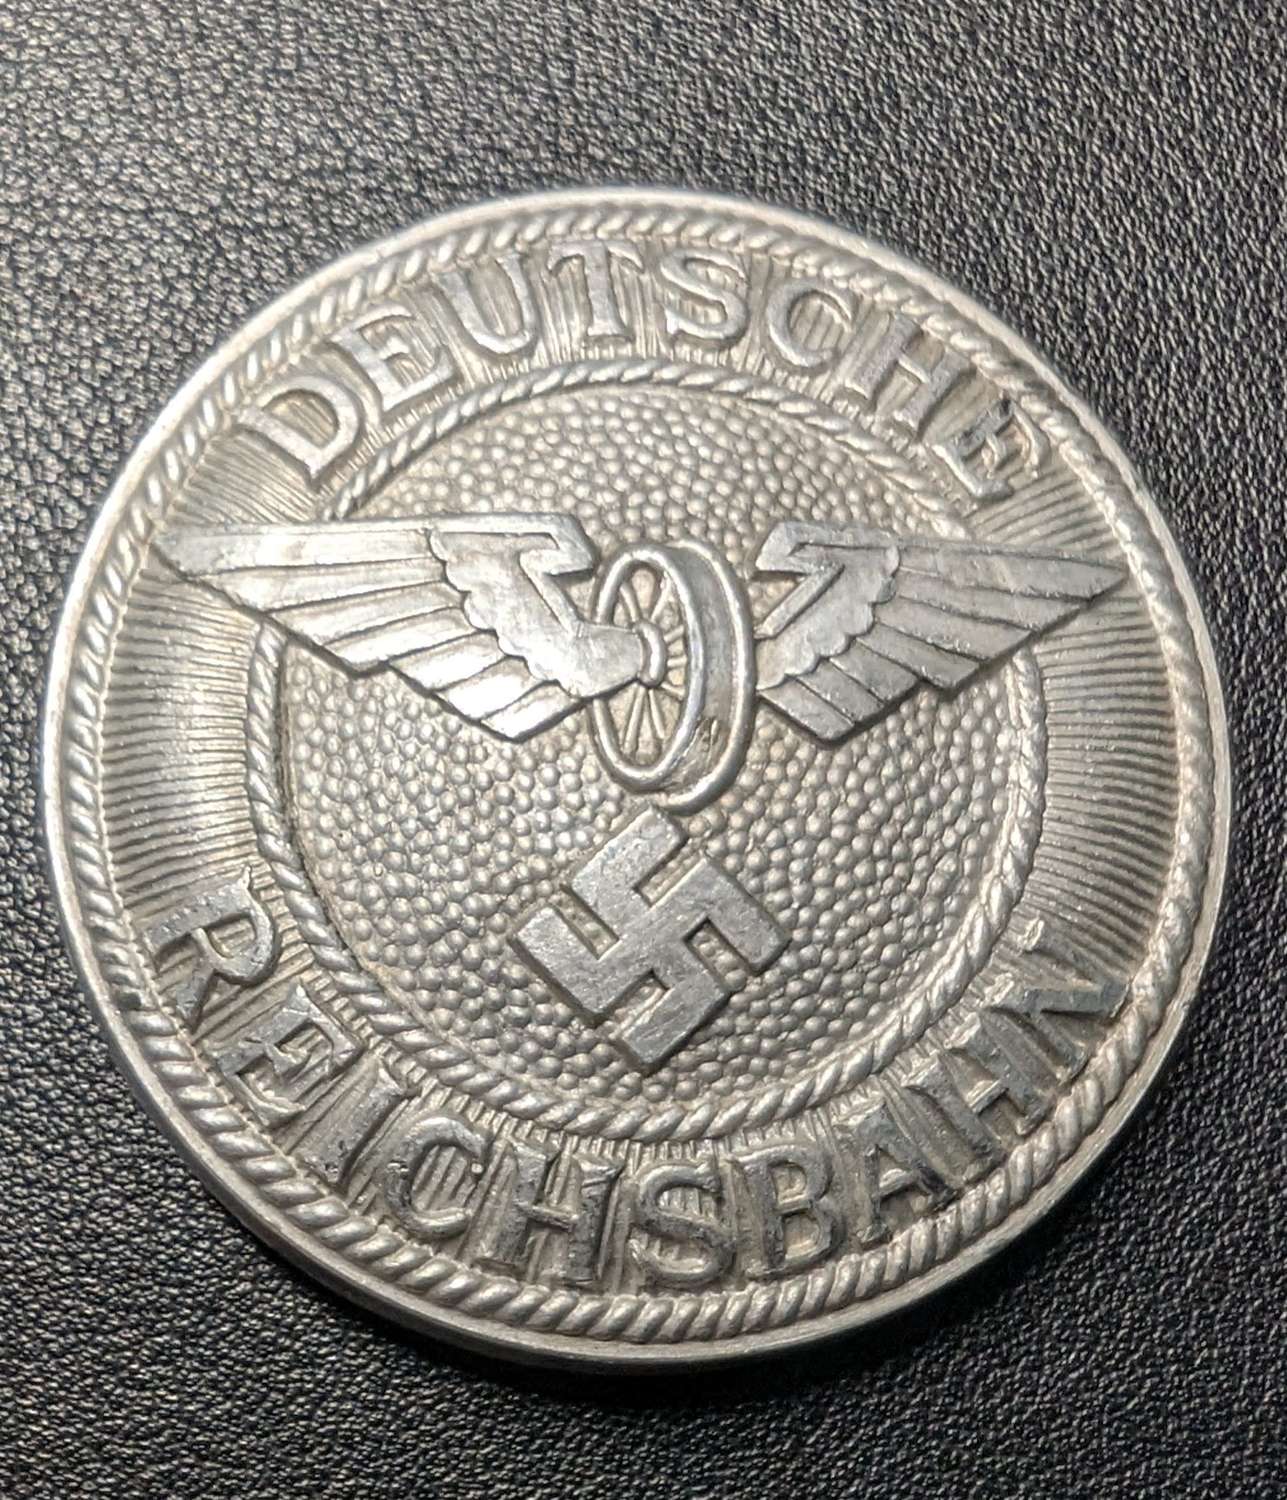 Deutsche Reichsbahn Officers Central Disc for Buckle